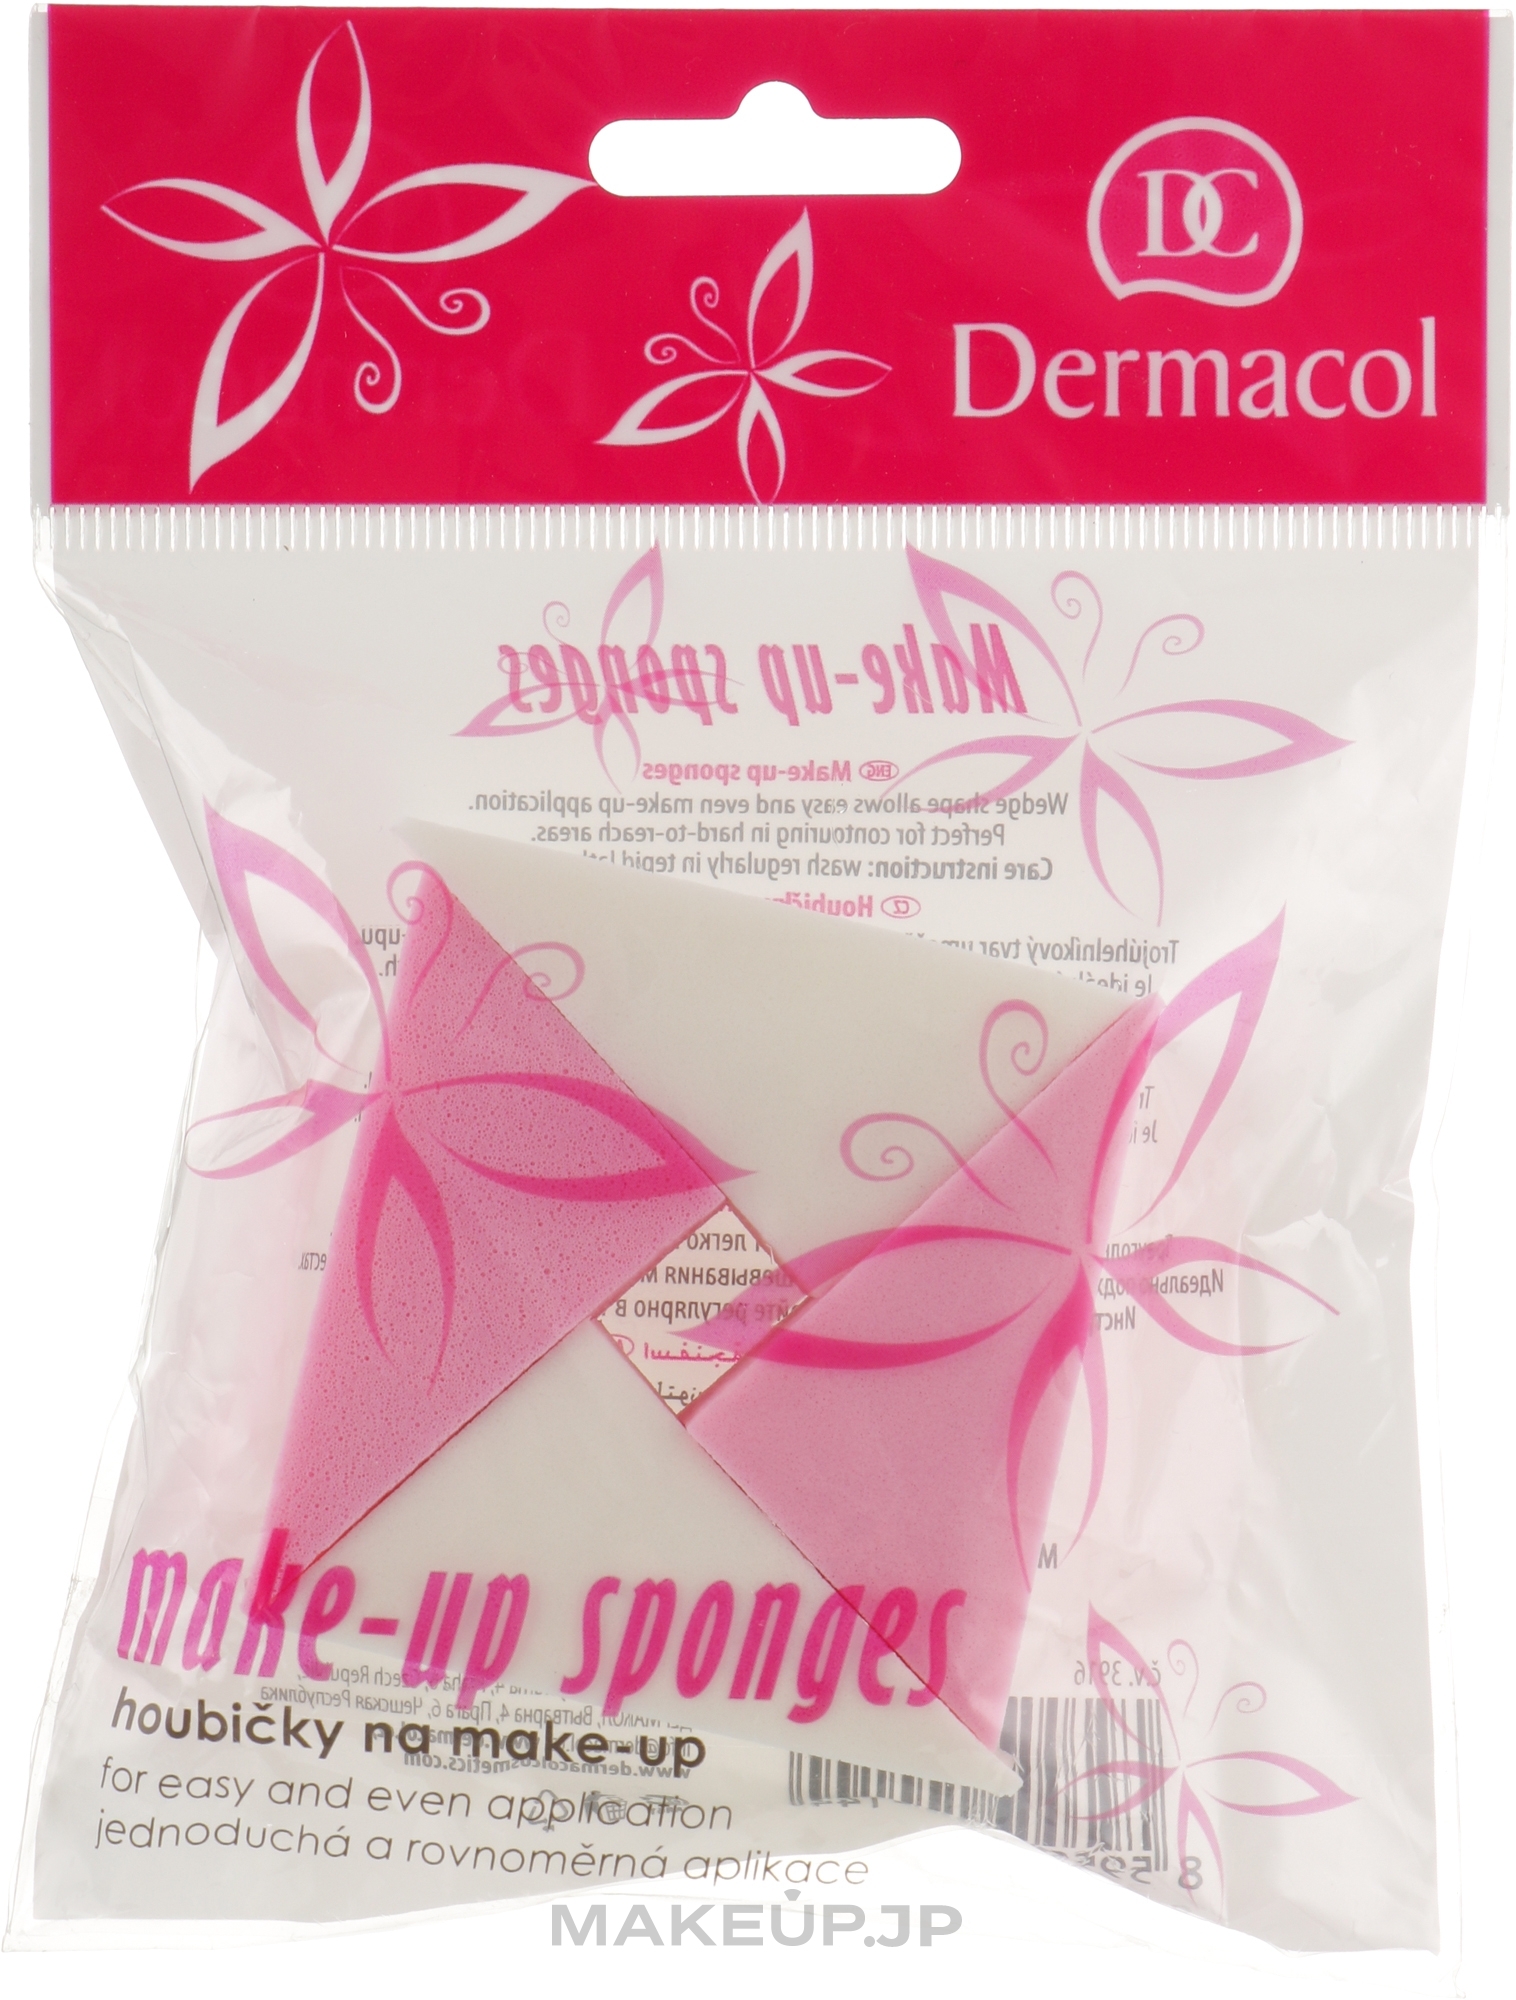 Dermacol Make-up Sponges Makeup Sponge | Makeup.jp